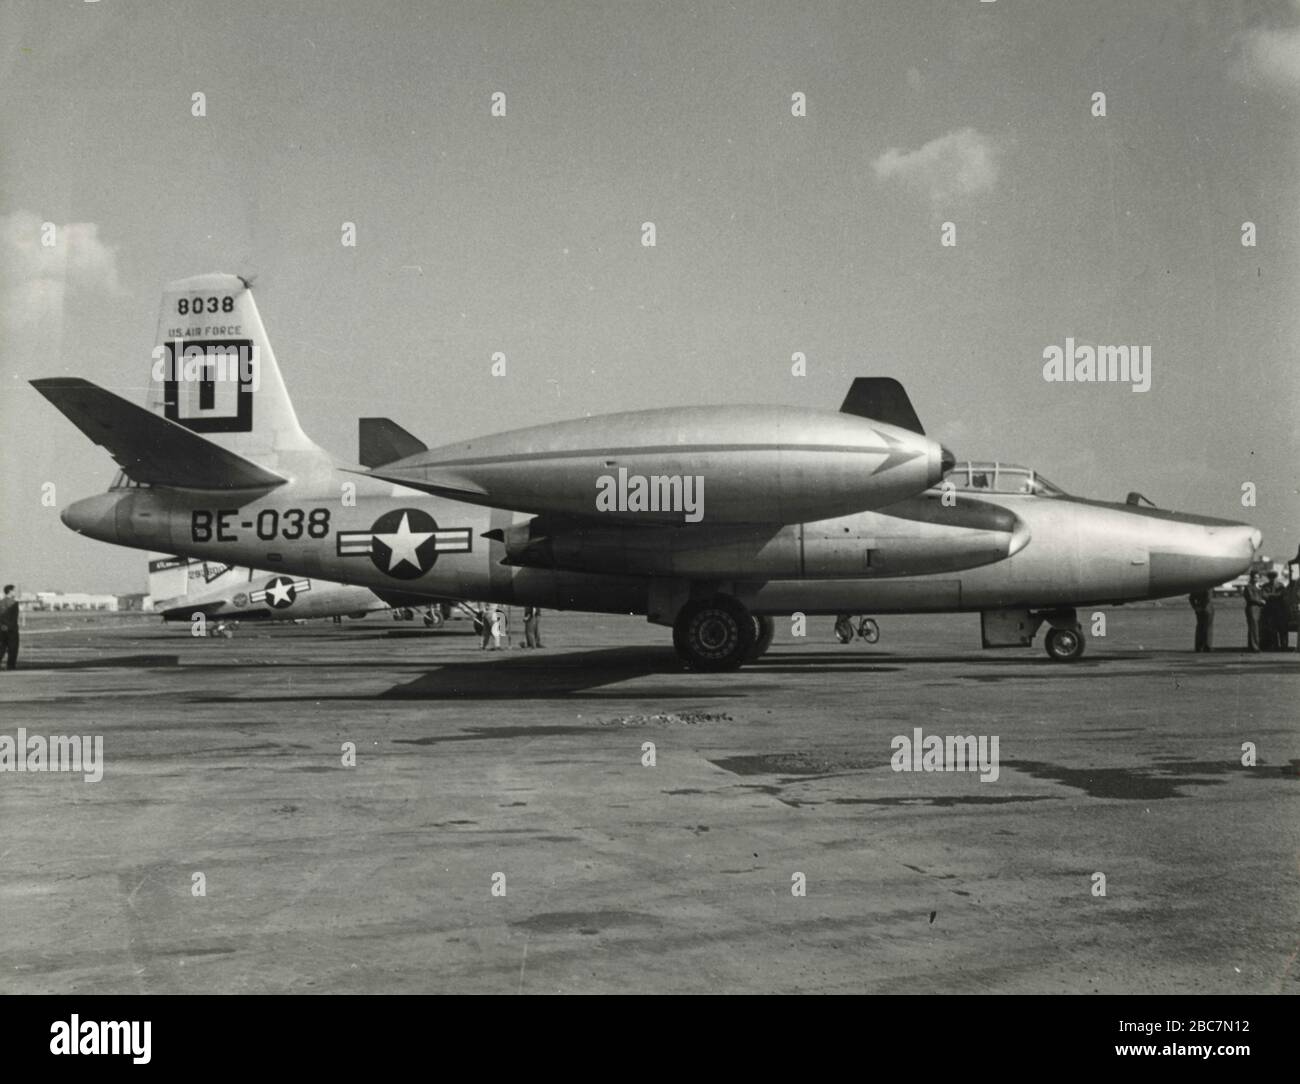 Us Air Force aircraft Lockheed P-80 Shooting Star, 1950s Stock Photo